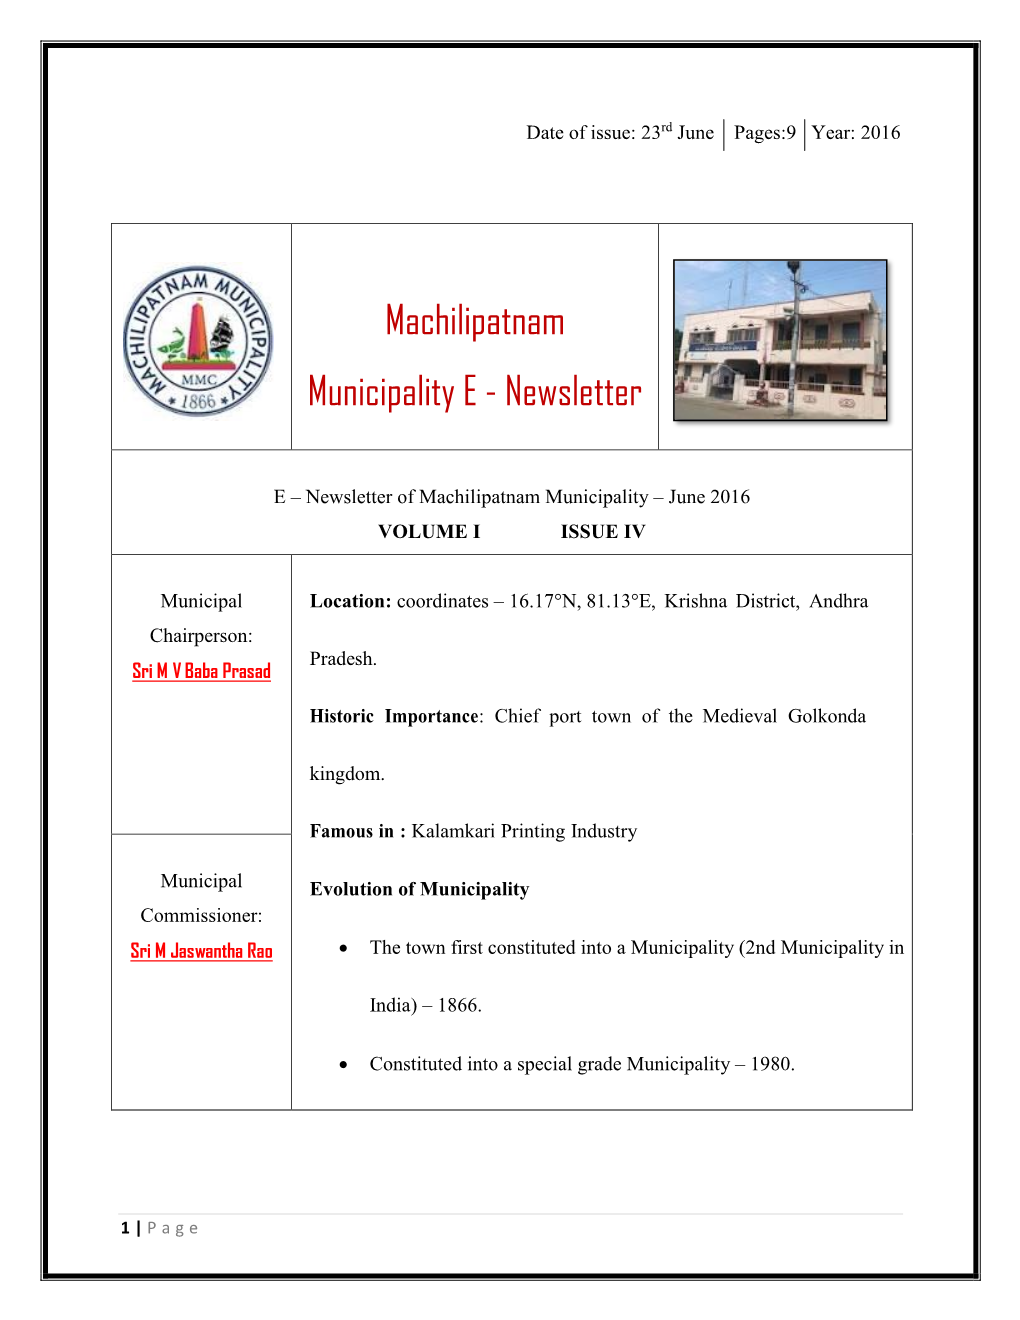 Machilipatnam Municipality E - Newsletter